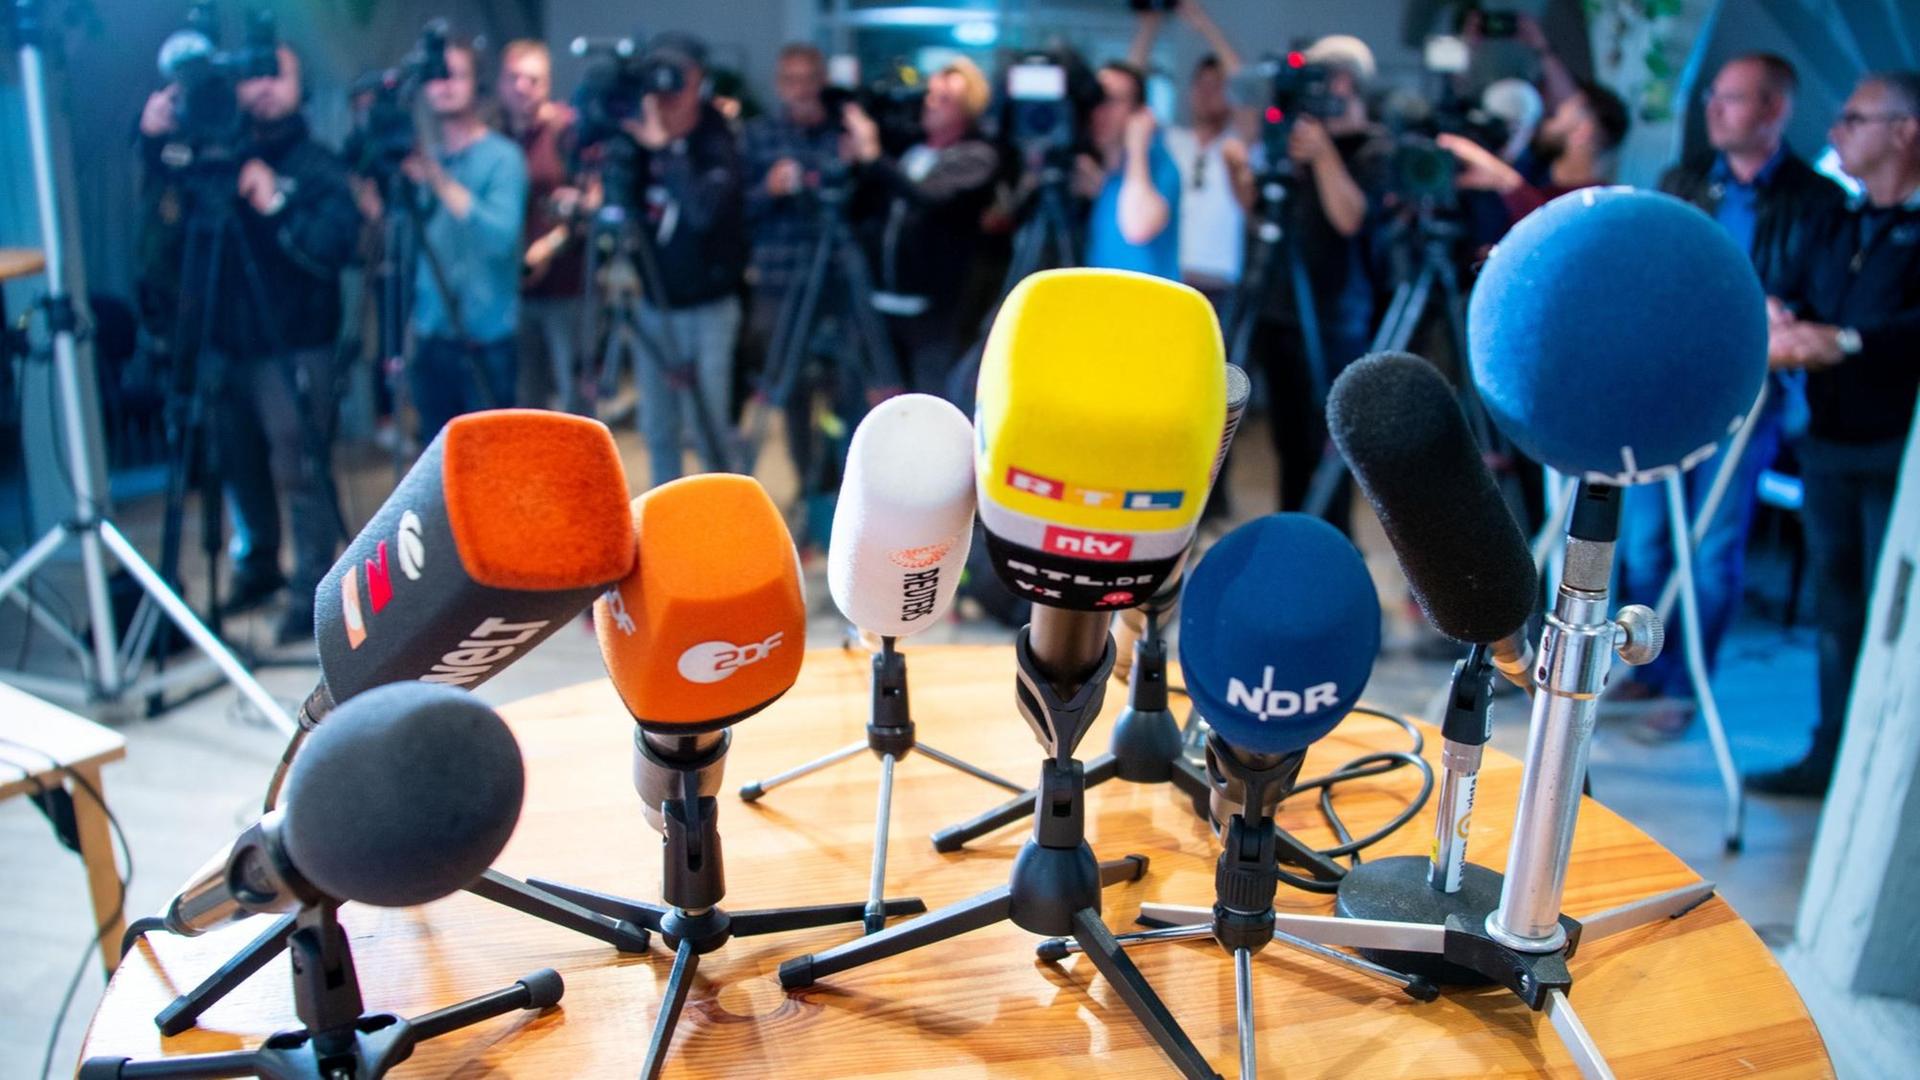 Bei einer Pressekonferenz sind Mikrofone auf einem Tisch platziert und Kameras aufgebaut.